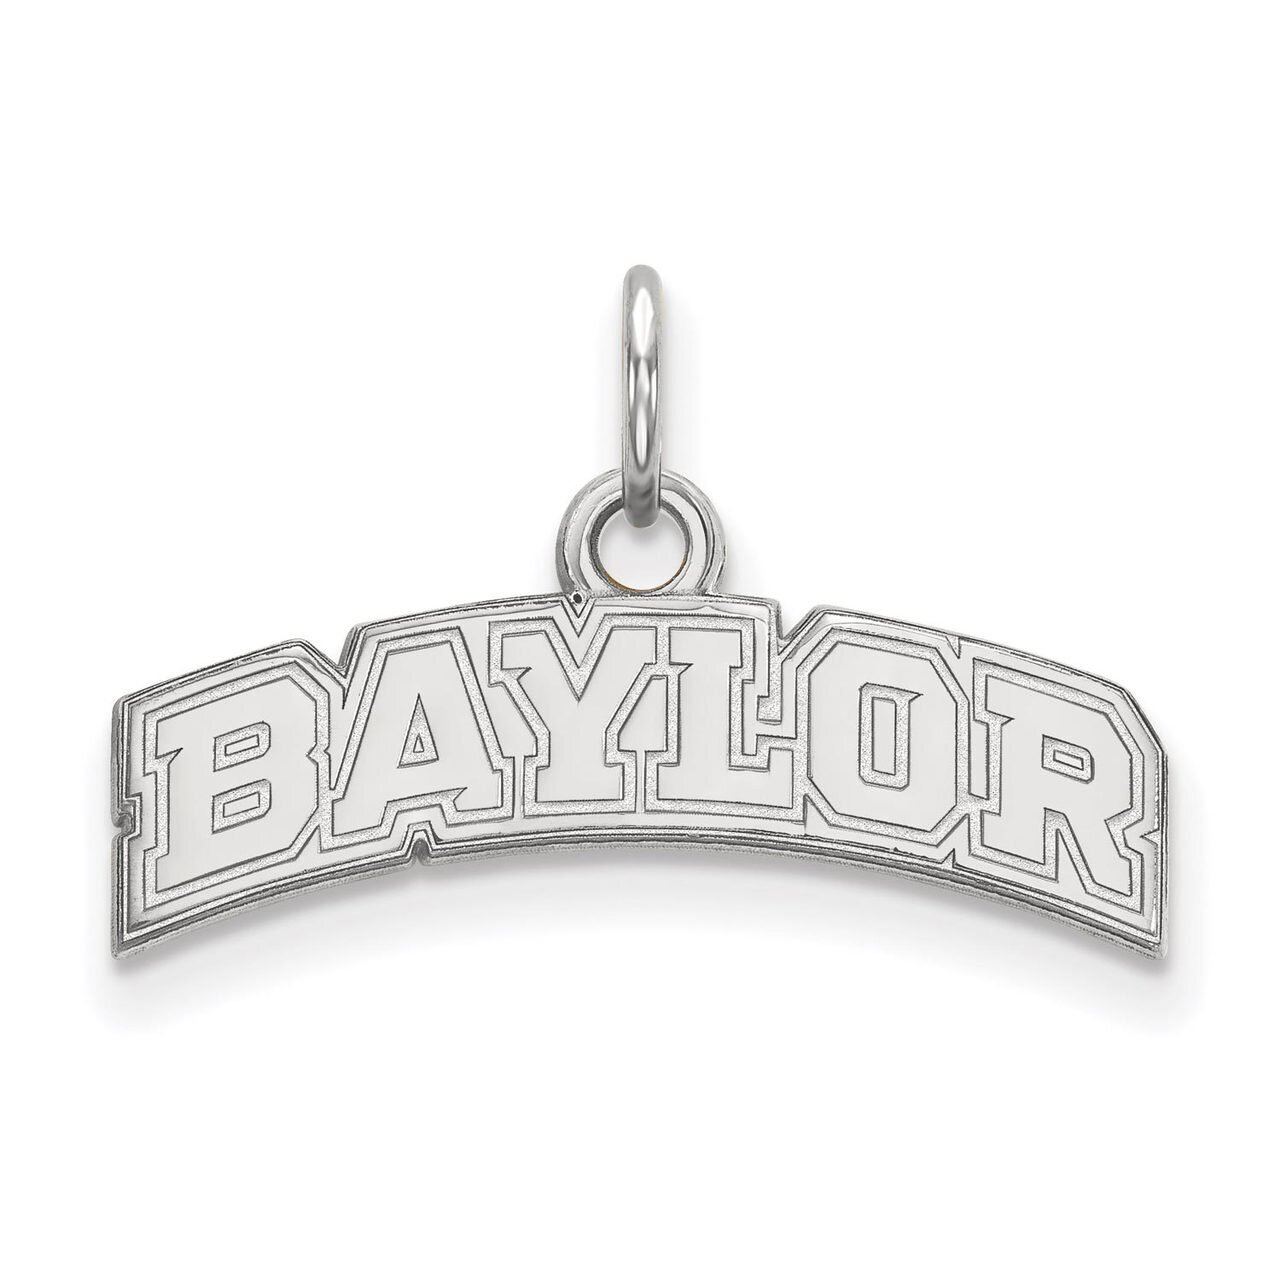 Baylor University Extra Small Pendant Sterling Silver SS036BU